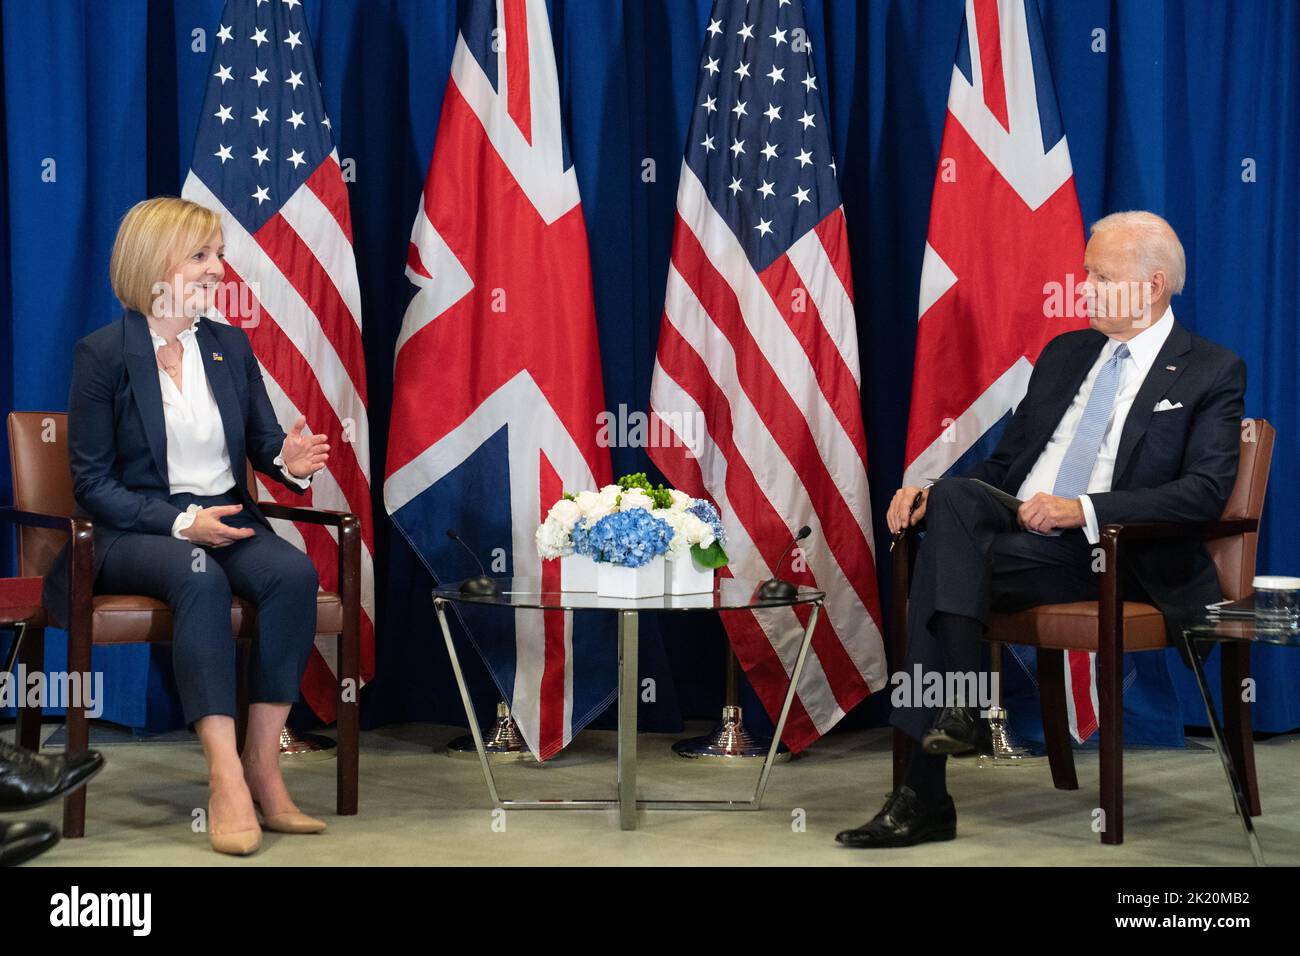 La Primera Ministra Liz Truss celebra una reunión bilateral con el Presidente de los Estados Unidos, Joe Biden, en la sede de las Naciones Unidas en Nueva York, durante su visita a los Estados Unidos para asistir a la Asamblea General de las Naciones Unidas de 77th. Fecha de la foto: Miércoles 21 de septiembre de 2022. Foto de stock